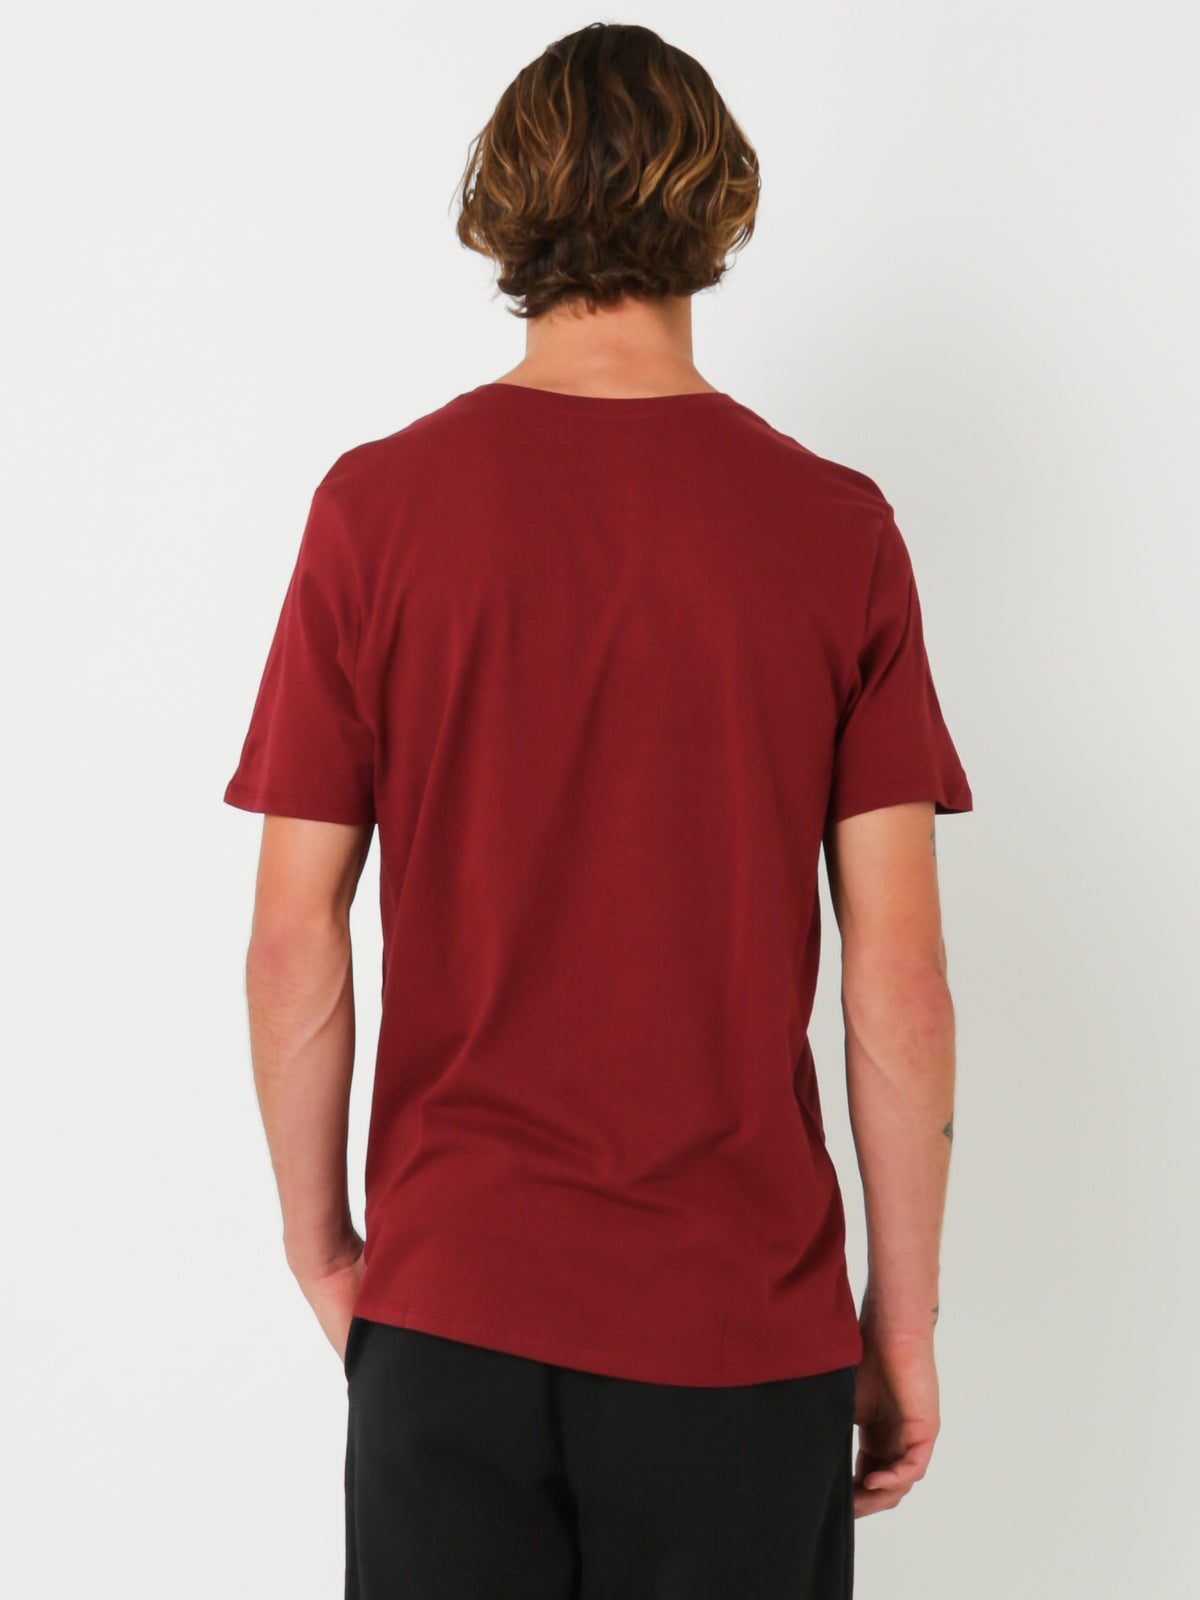 Futura Icon T-Shirt in Dark Red